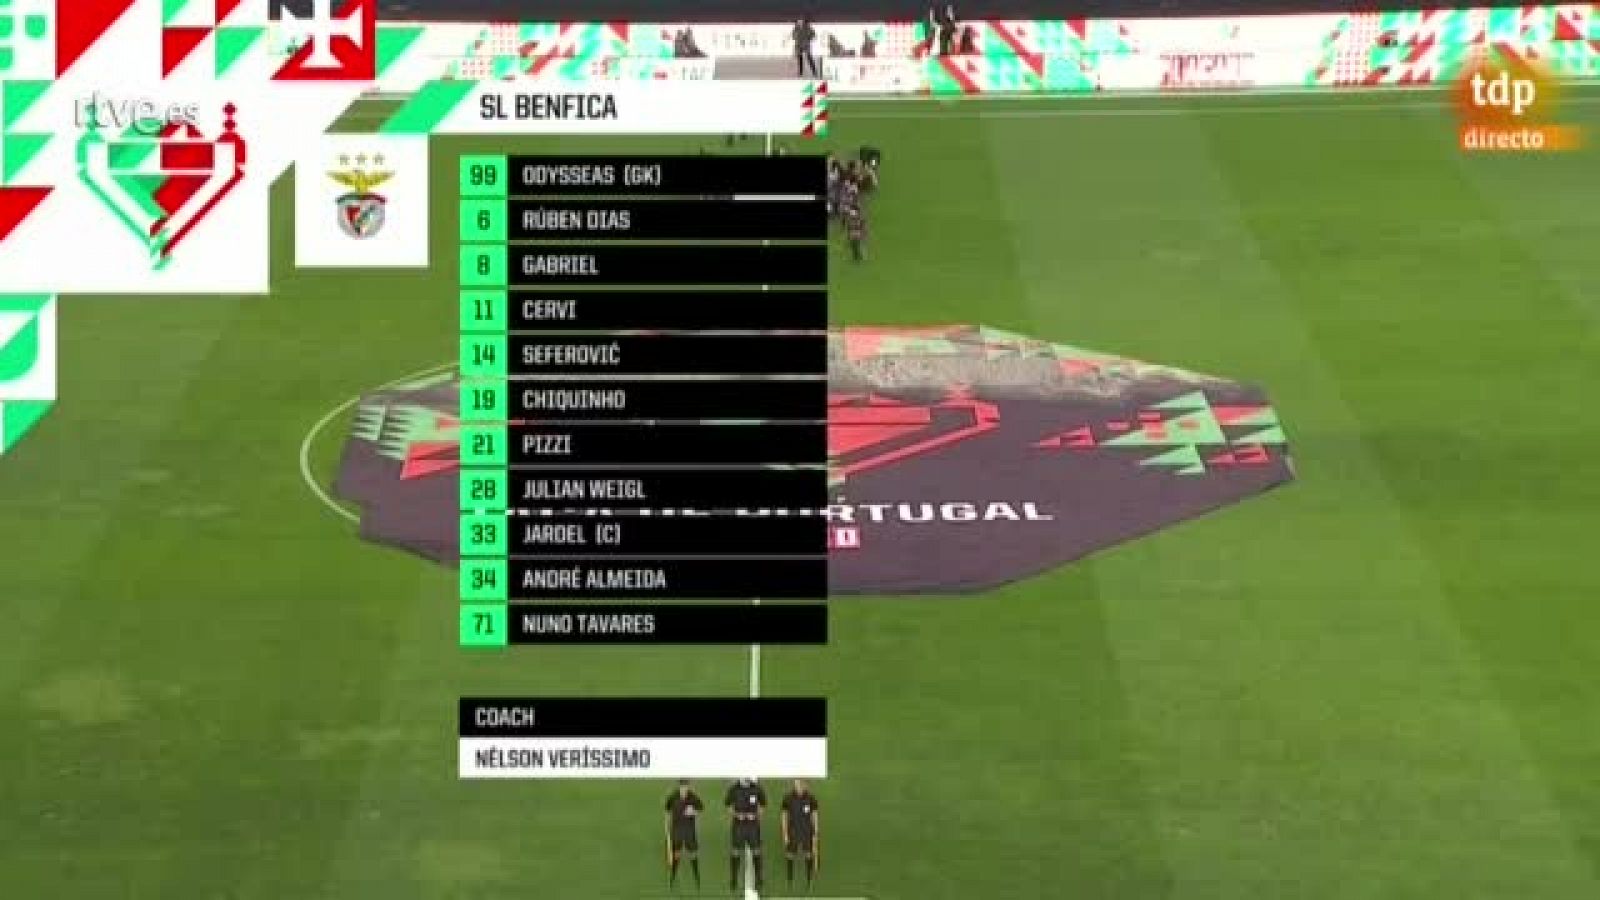 Vídeo: Doblete de Mbemba en la final de la Taça ante el Benfica y del Oporto en Portugal